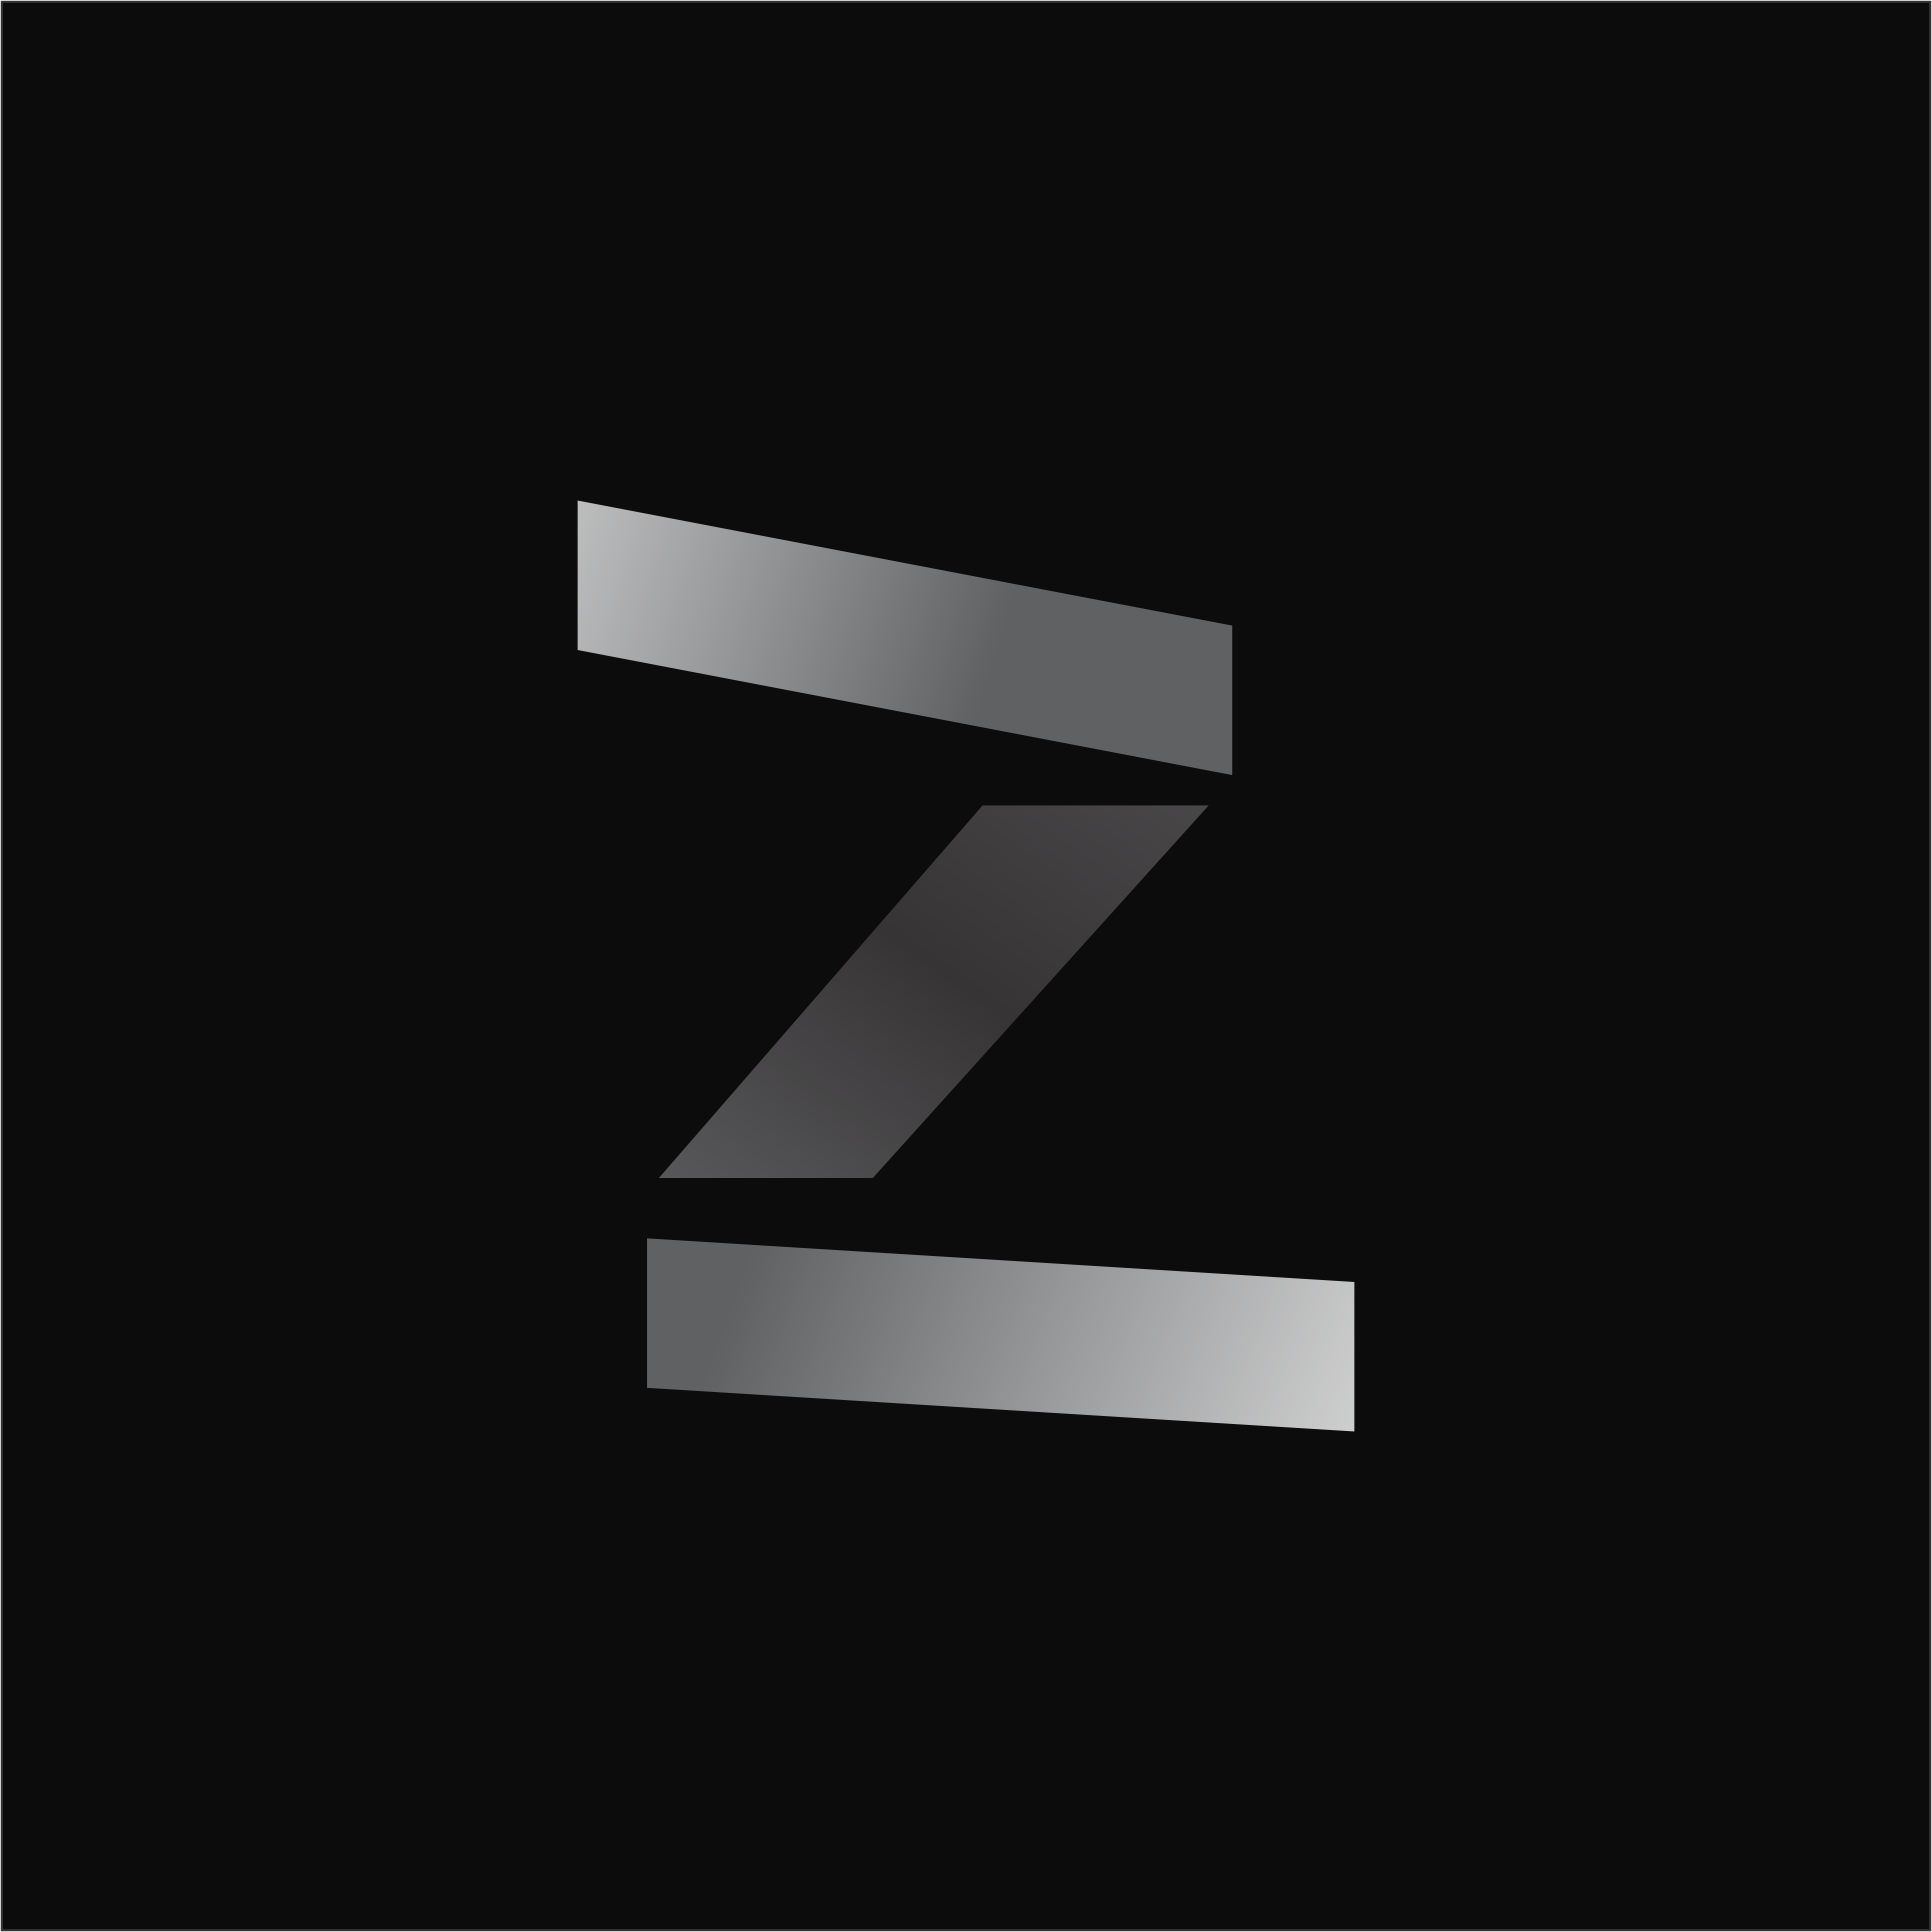 Zkc-Art's Profile Picture